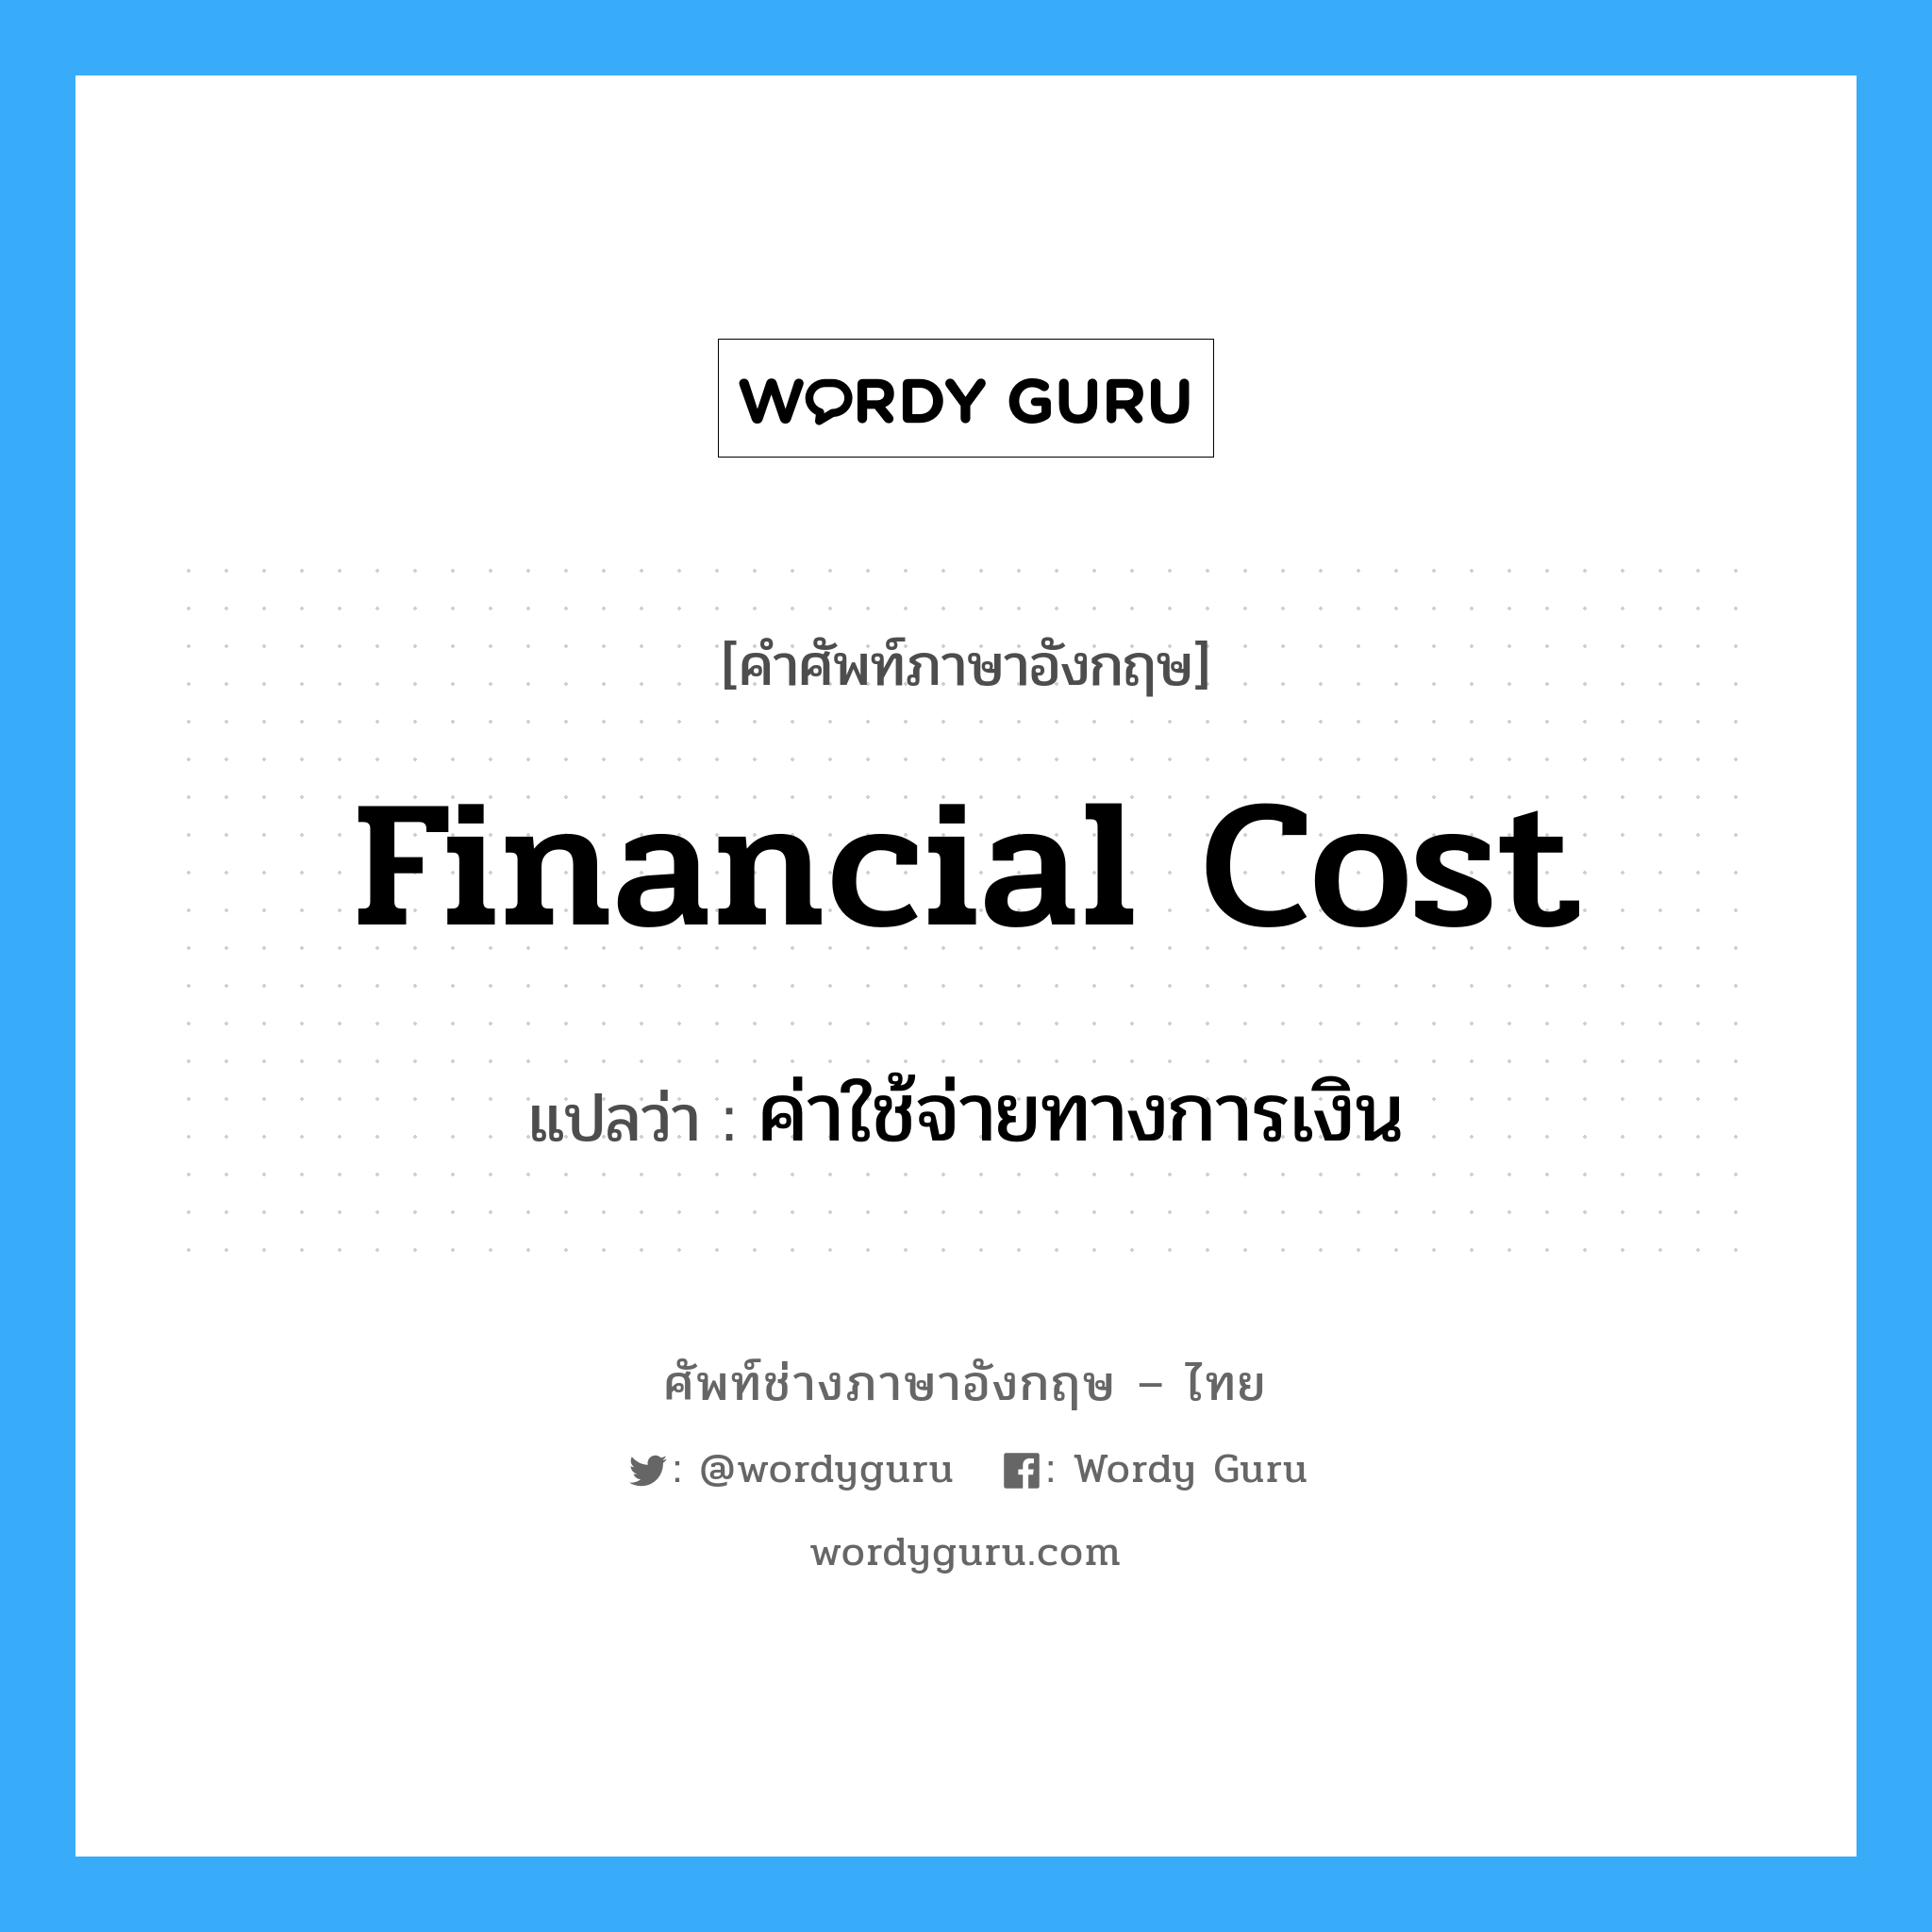 financial cost แปลว่า?, คำศัพท์ช่างภาษาอังกฤษ - ไทย financial cost คำศัพท์ภาษาอังกฤษ financial cost แปลว่า ค่าใช้จ่ายทางการเงิน